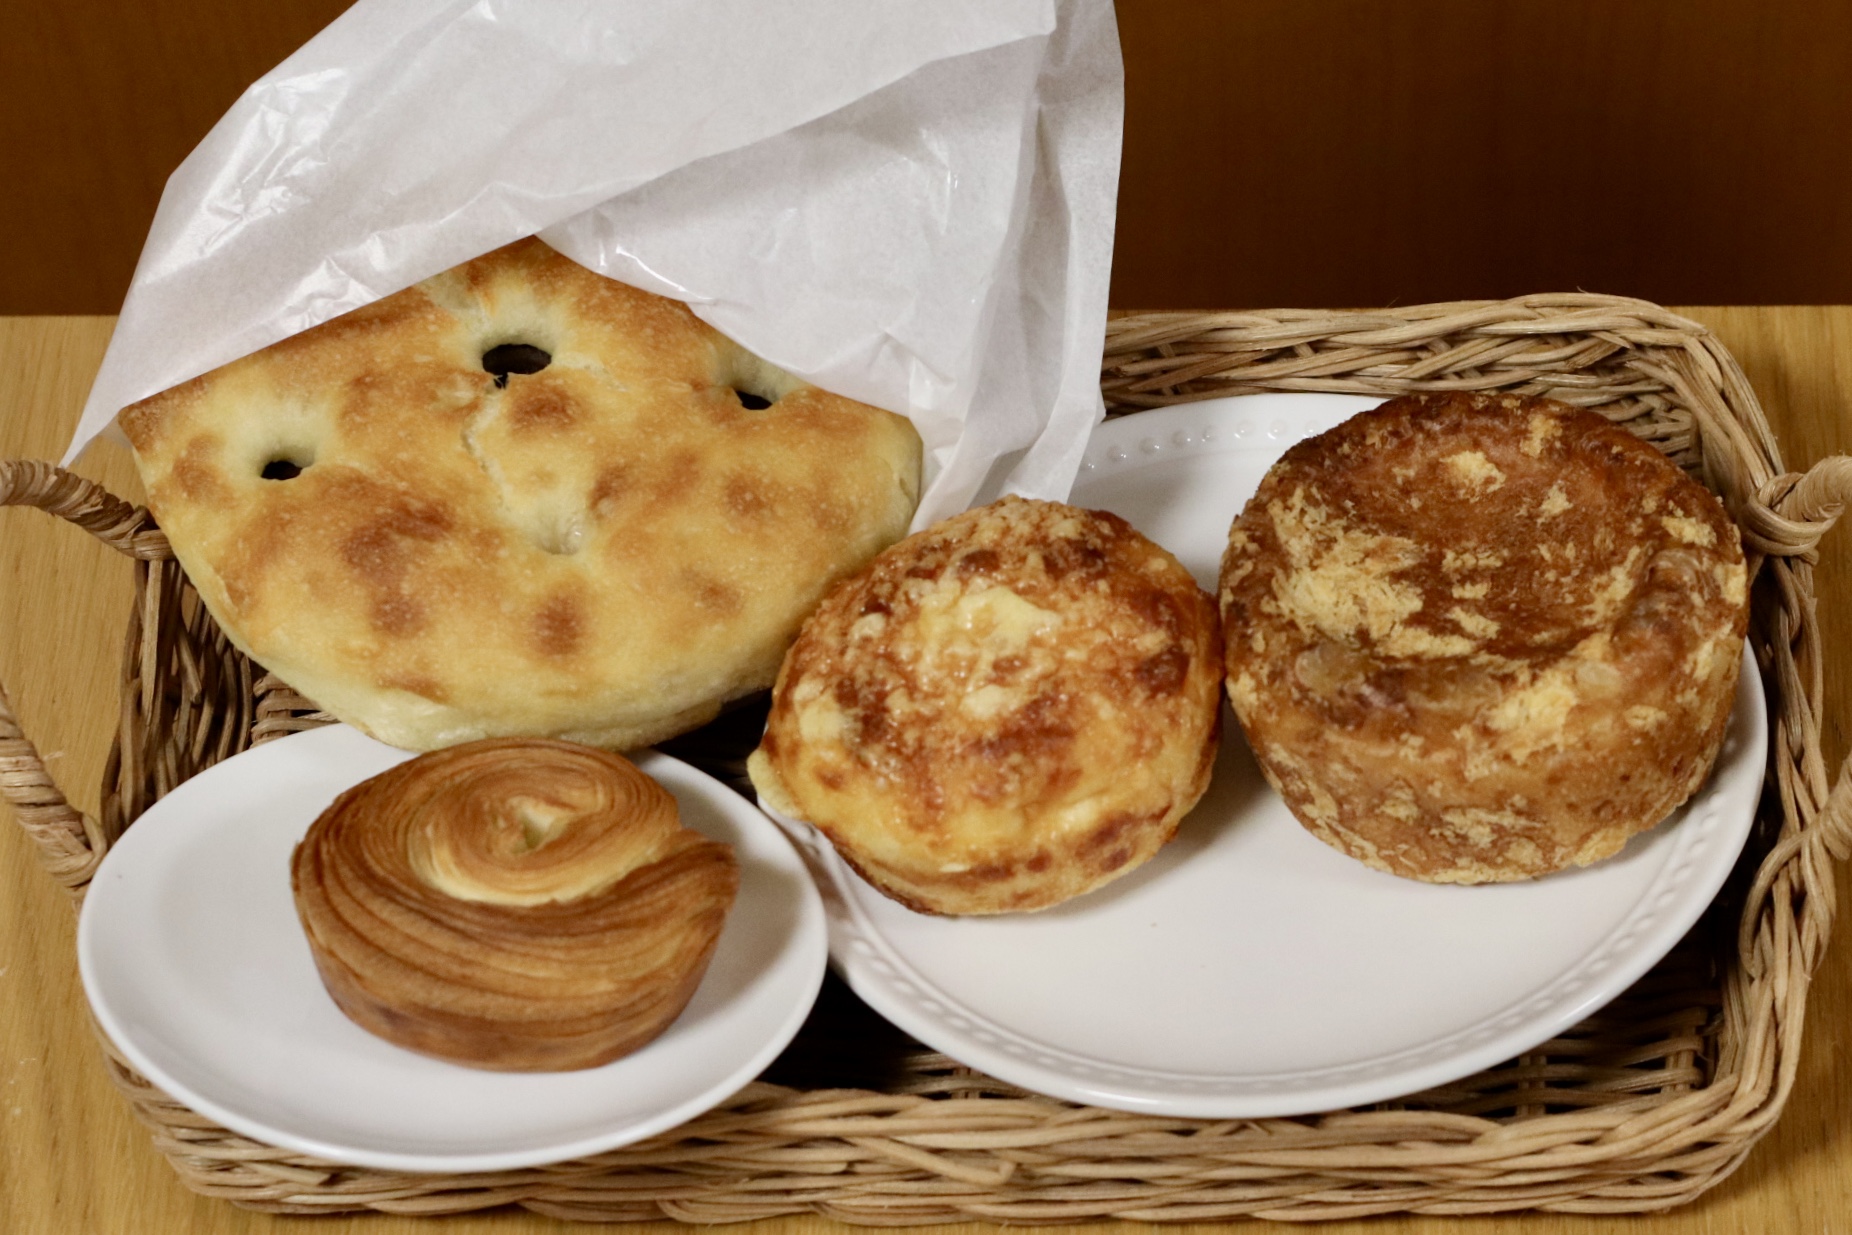 黄金｜種類豊富な鍋焼き丸型パンが大人気。海外のような運河沿いのおしゃれベーカリーカフェ